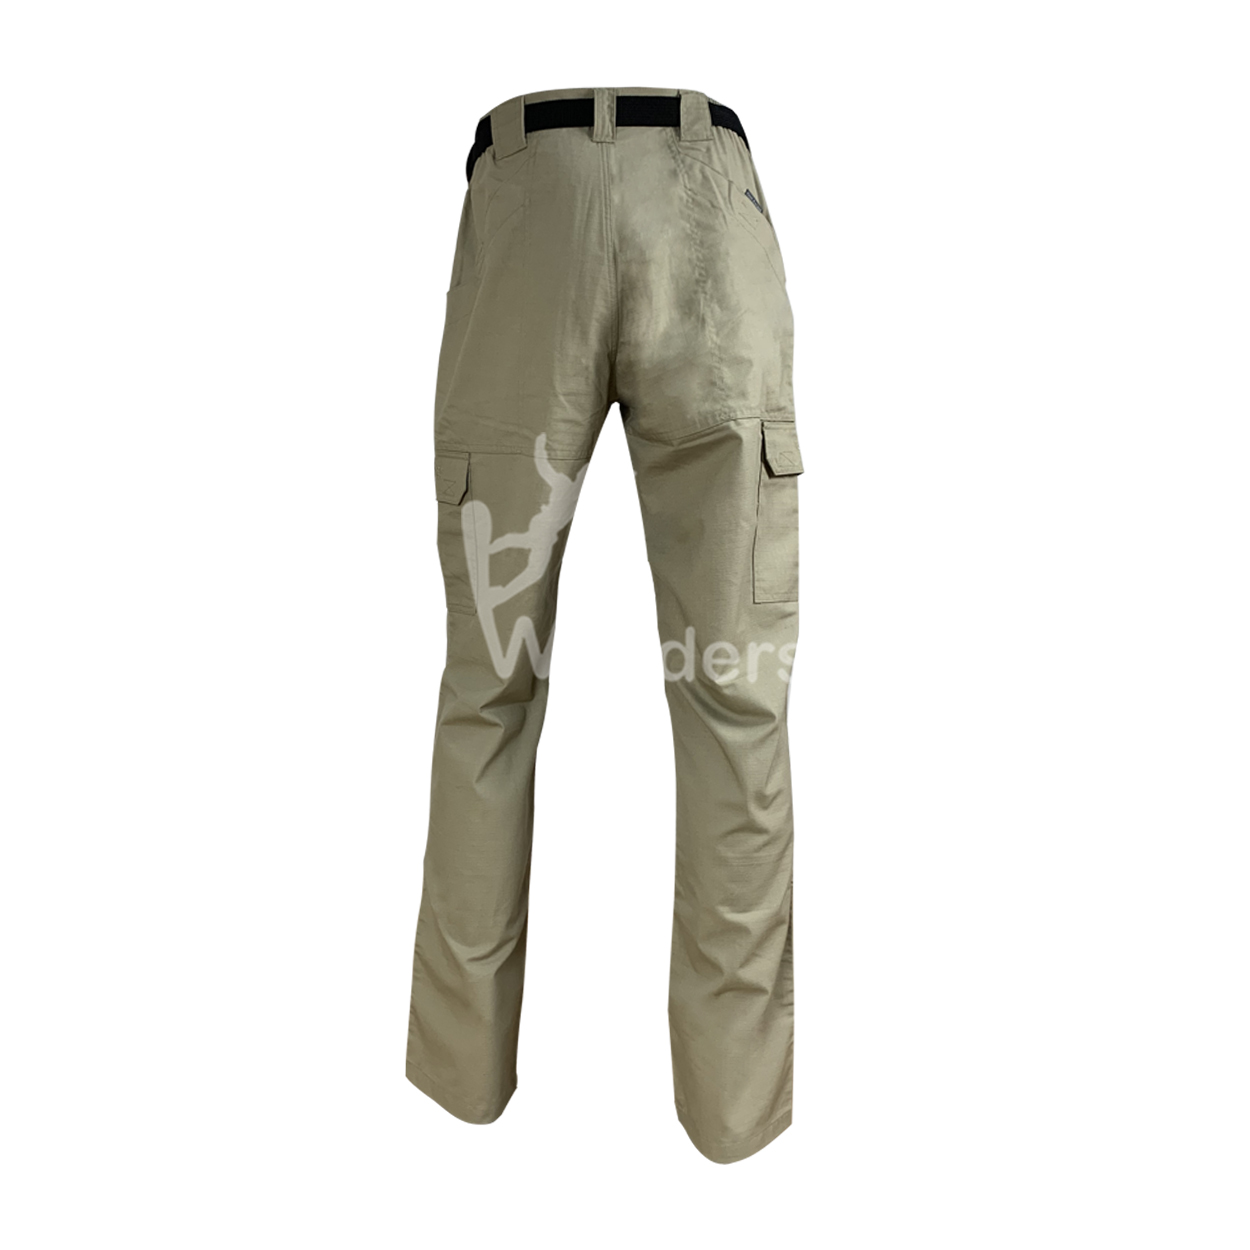 Wonders outdoor hiking pants design for outdoor-1